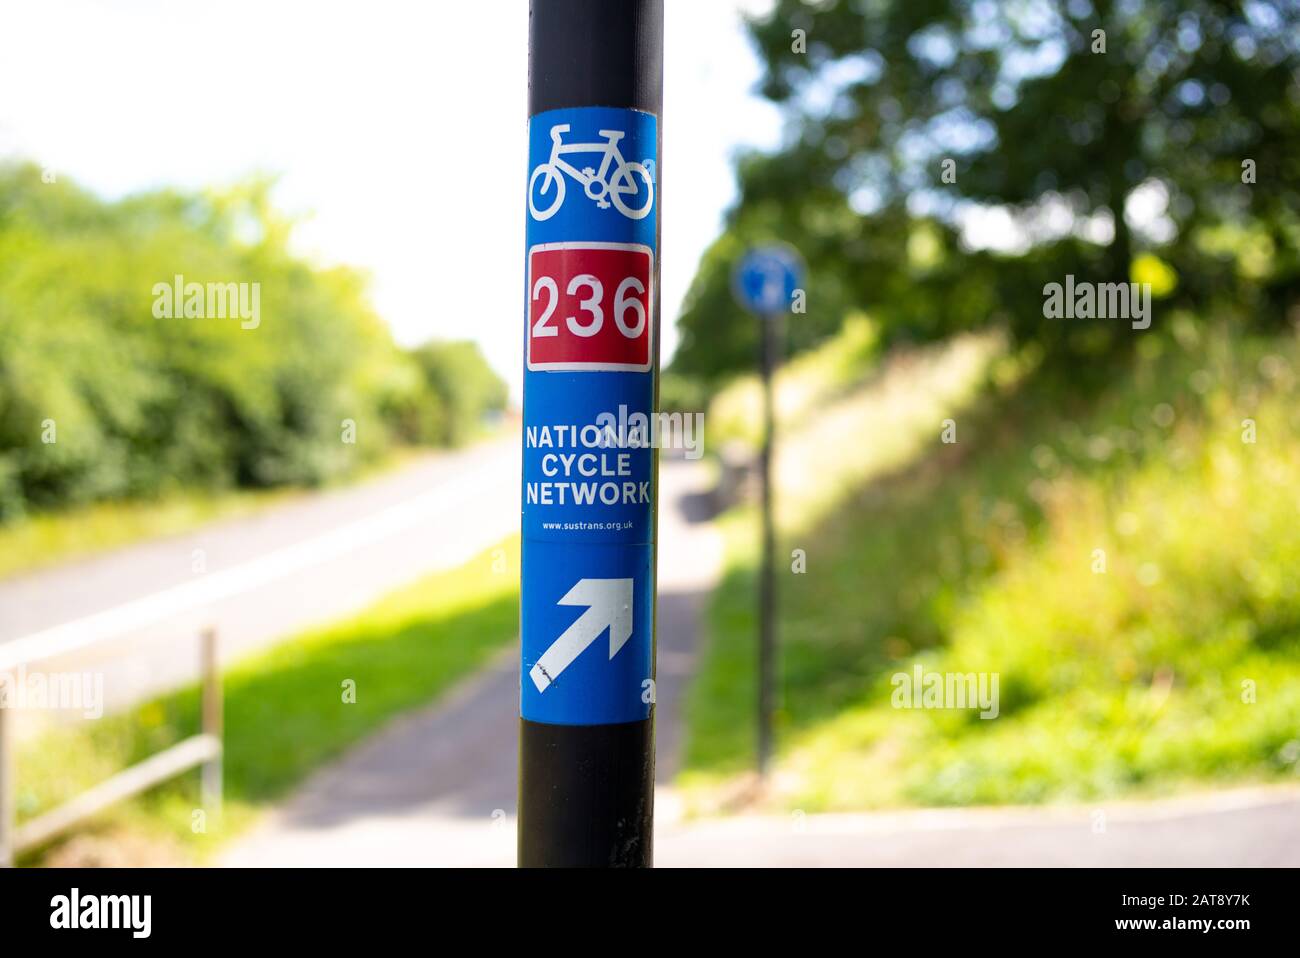 Un panneau et des indications pour le réseau National cycle route 236 dans le centre-ville de Southampton reliant la région de Totton pour les cyclistes et les voyageurs. Banque D'Images